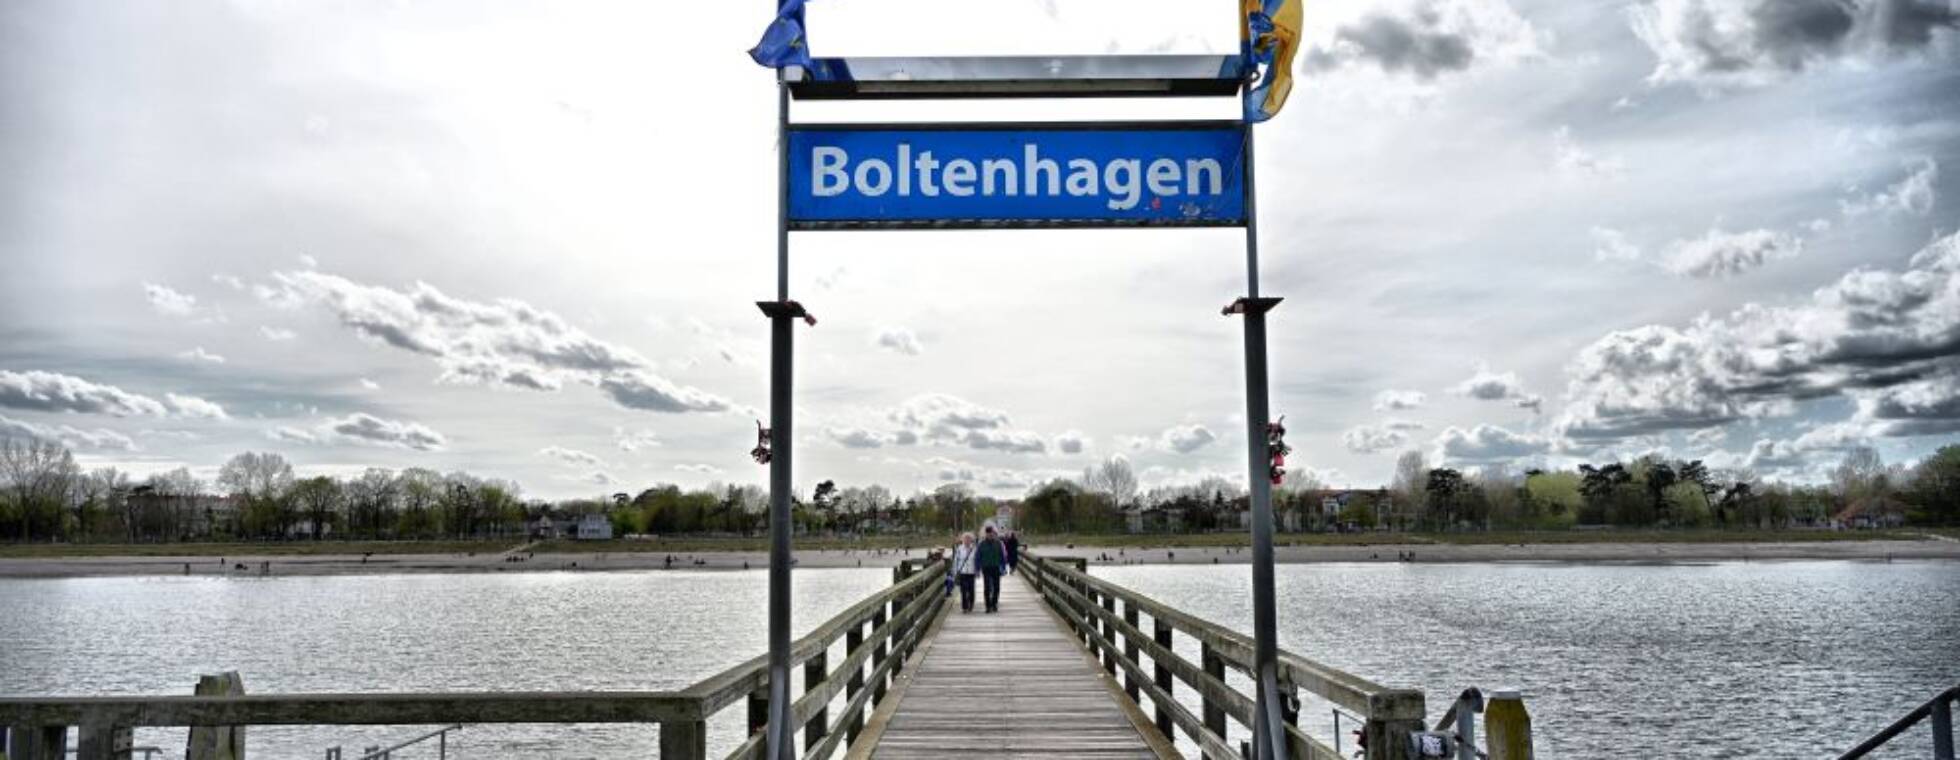 Blick über den Steg aufs Wasser mit dem Orstschild von Boltenhagen